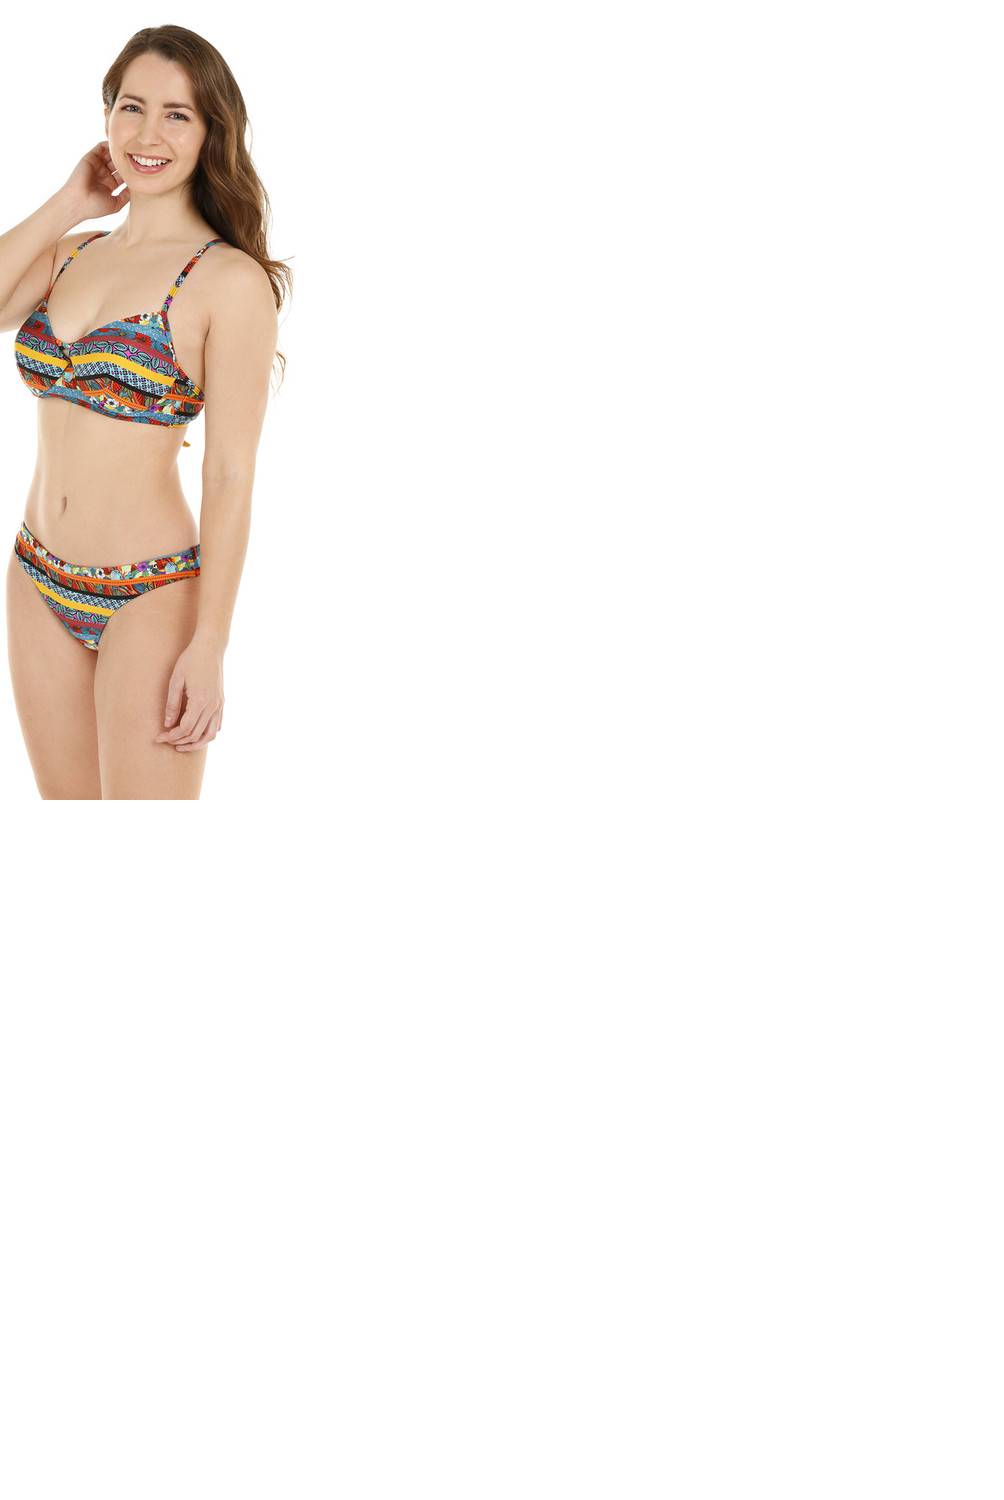 H2O WEAR - Mujer Bikini Copa tela con Brillo